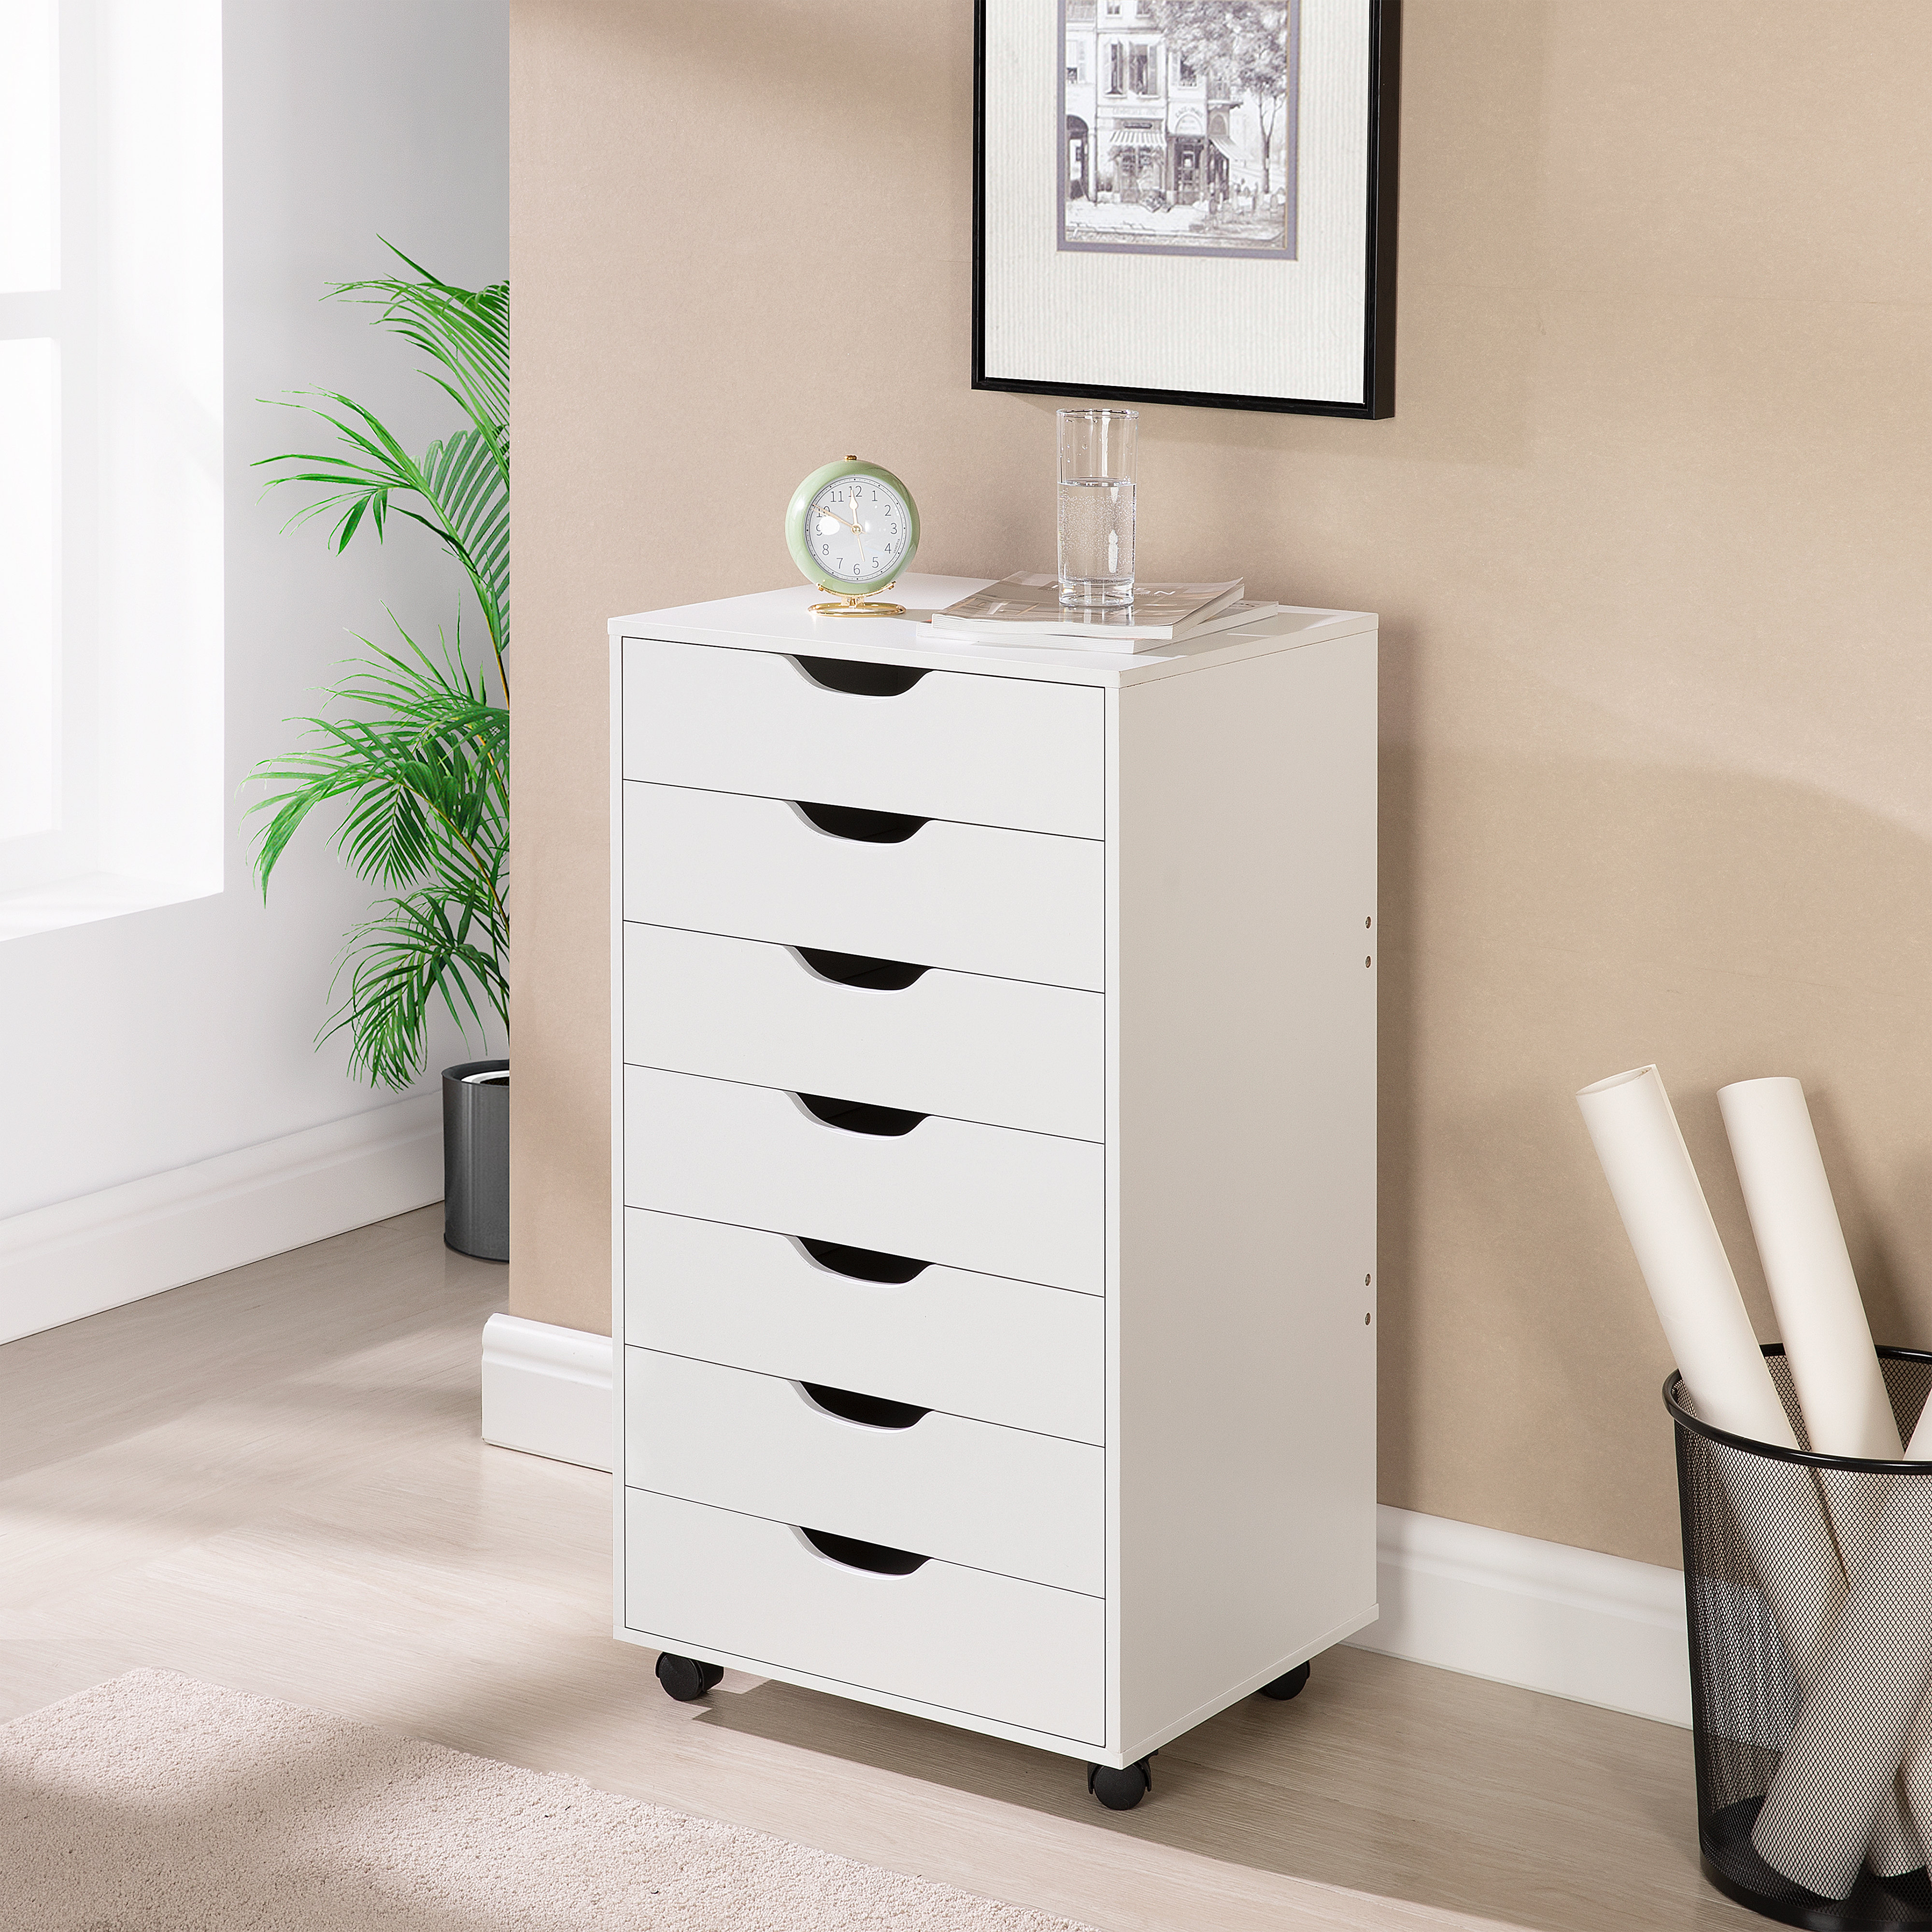 https://assets.wfcdn.com/im/81915457/compr-r85/2032/203255729/garysburg-7-drawer-office-storage-file-cabinet-on-wheels-desk-filing-drawer-unit.jpg